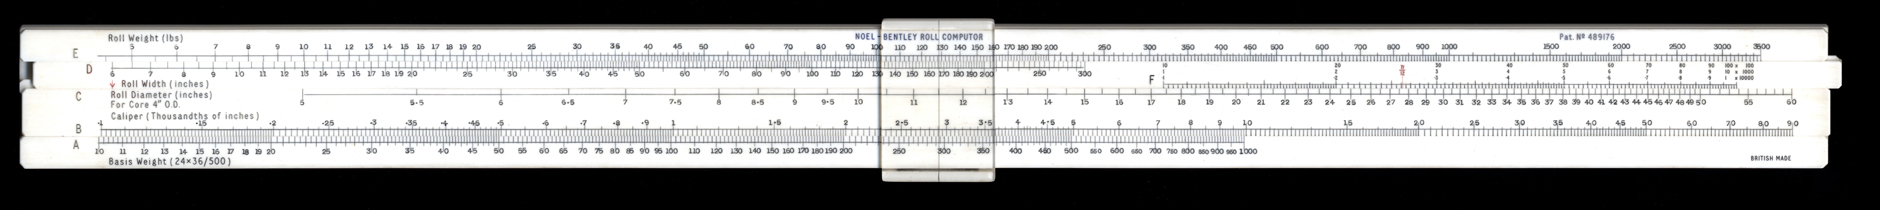 Unknown Noel-Bentley Desktop Paper Roll Computor poly-slide (2)